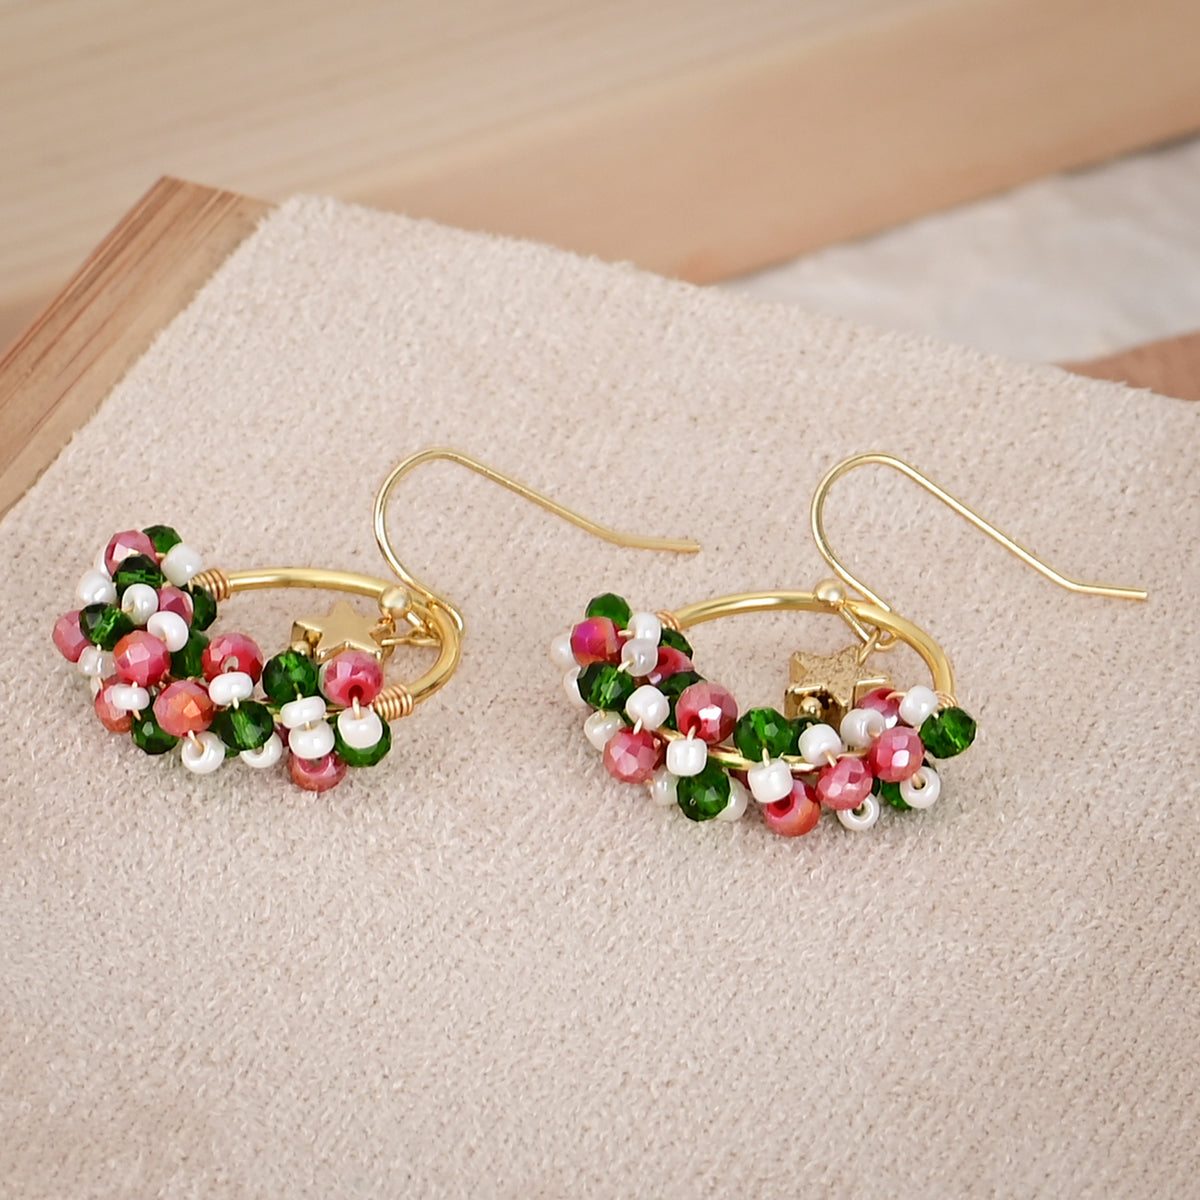 Starry Mistletoe Wreath Earrings